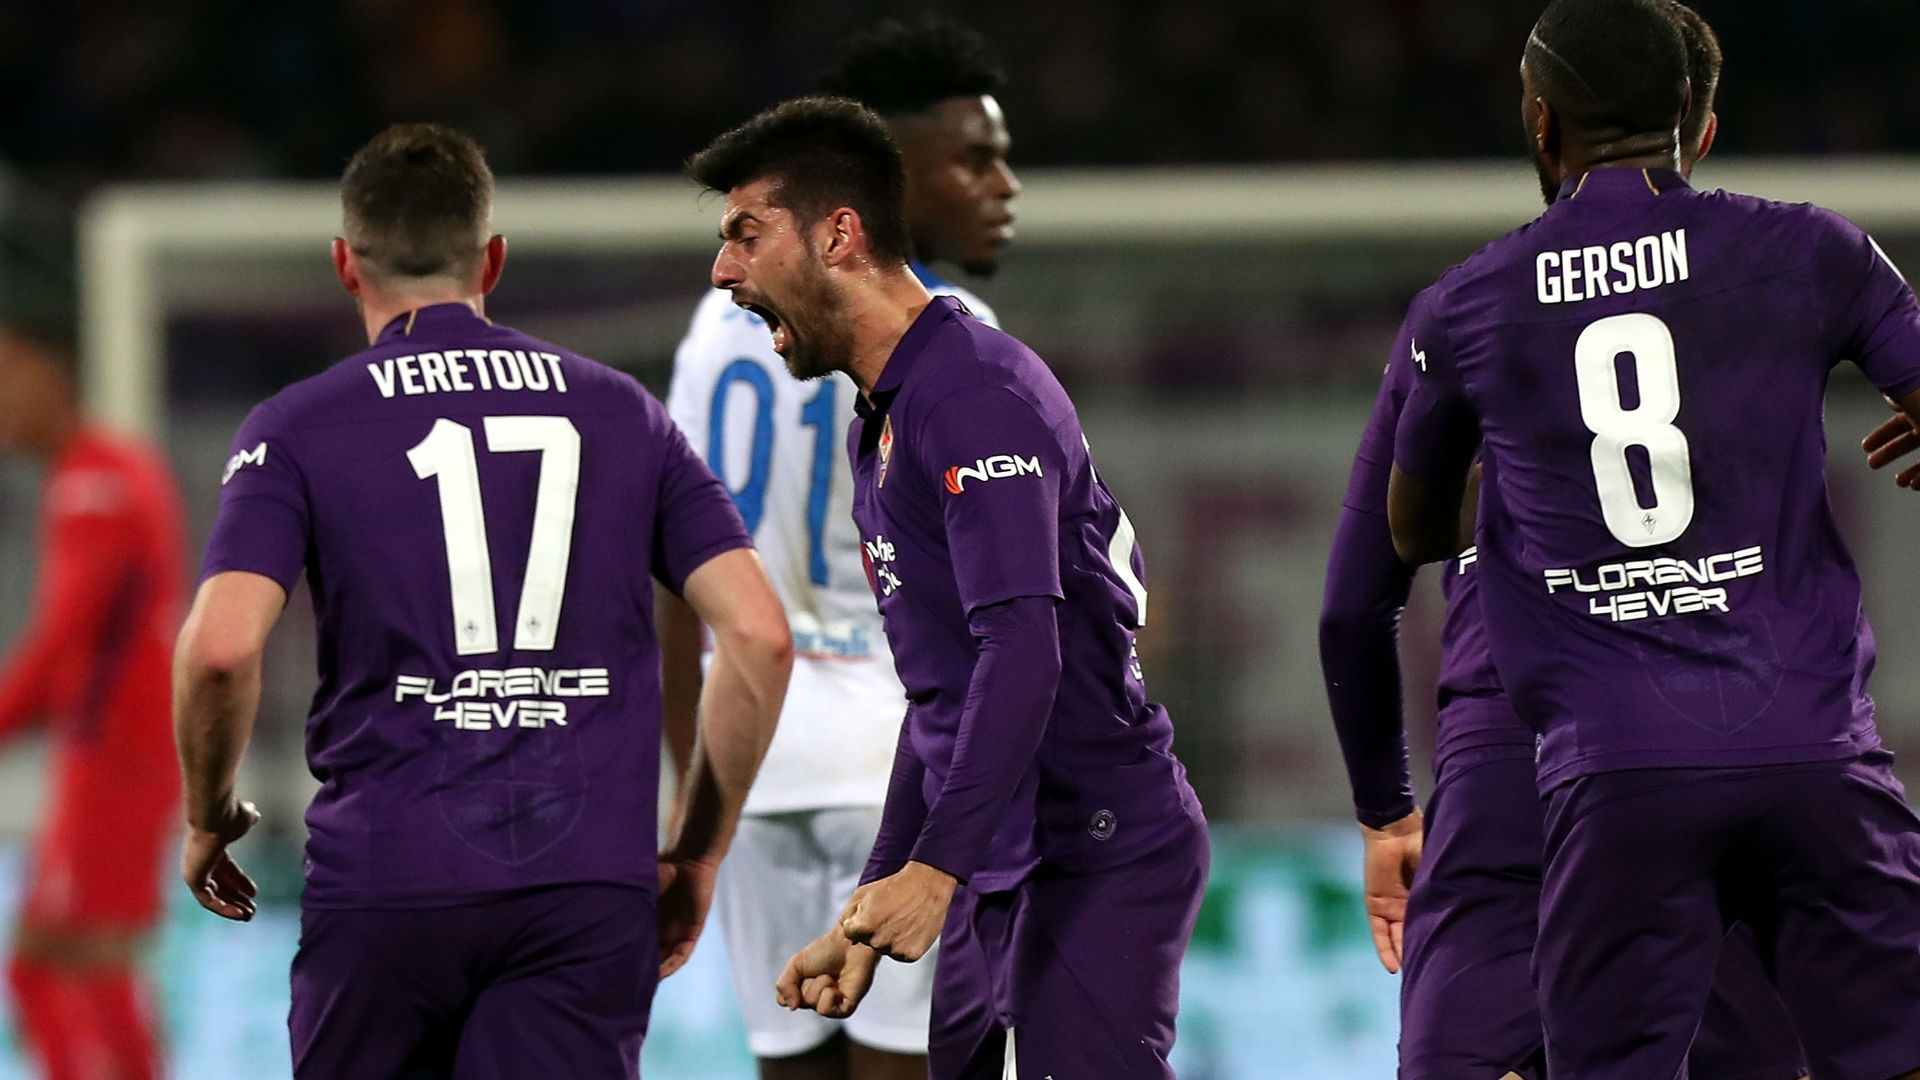 Fiorentina 3 Atalanta 3: Muriel sets up mouth-watering second leg